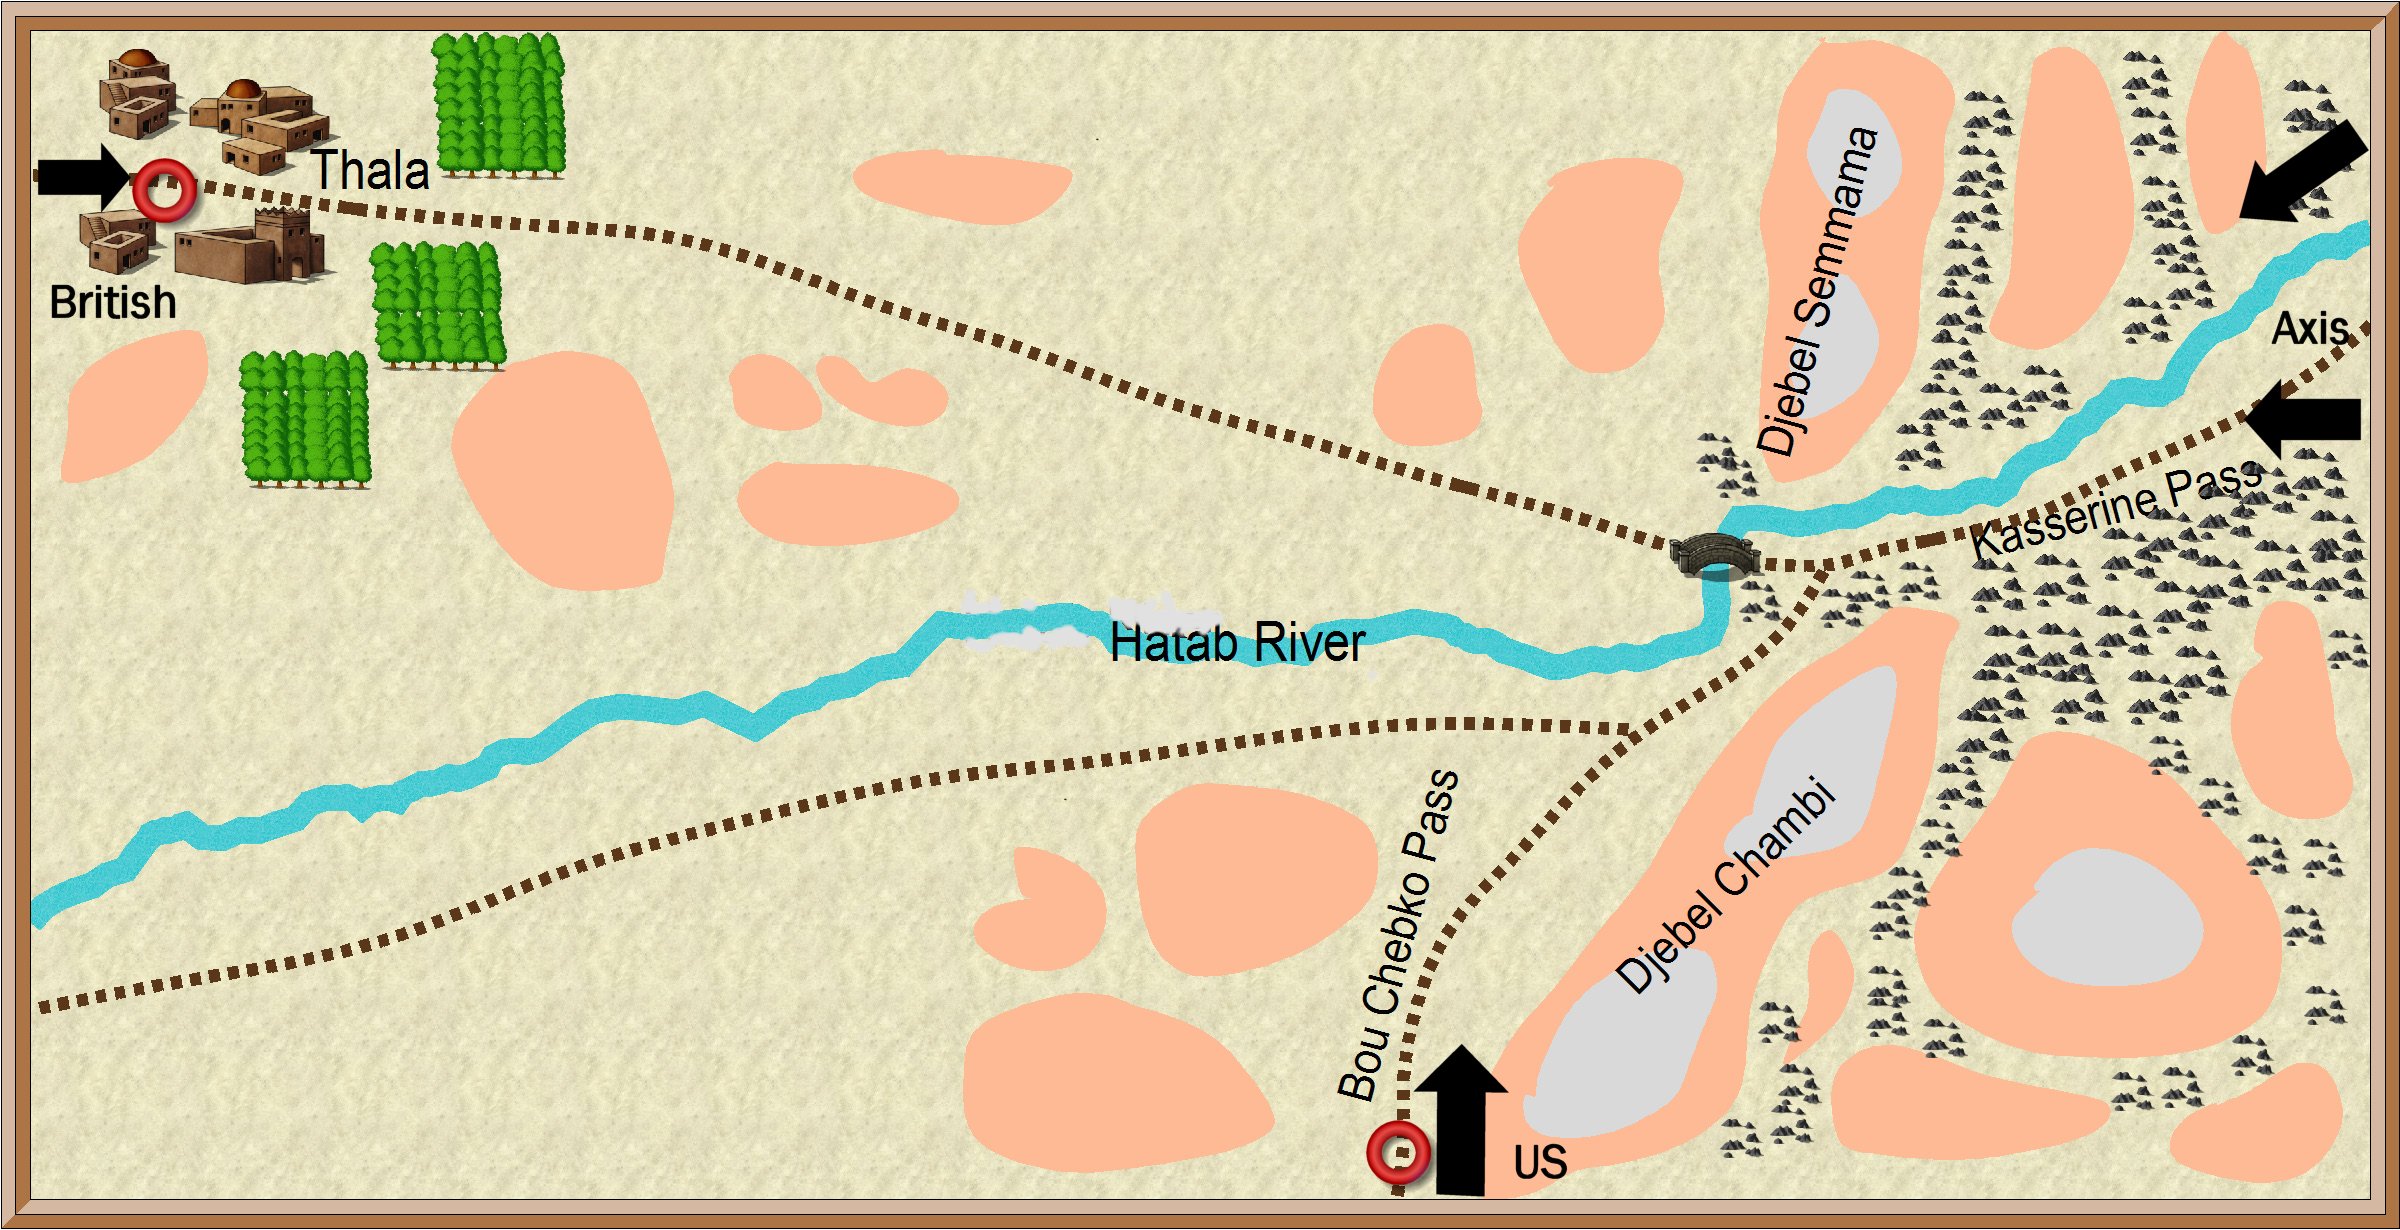 Kasserine Pass Map